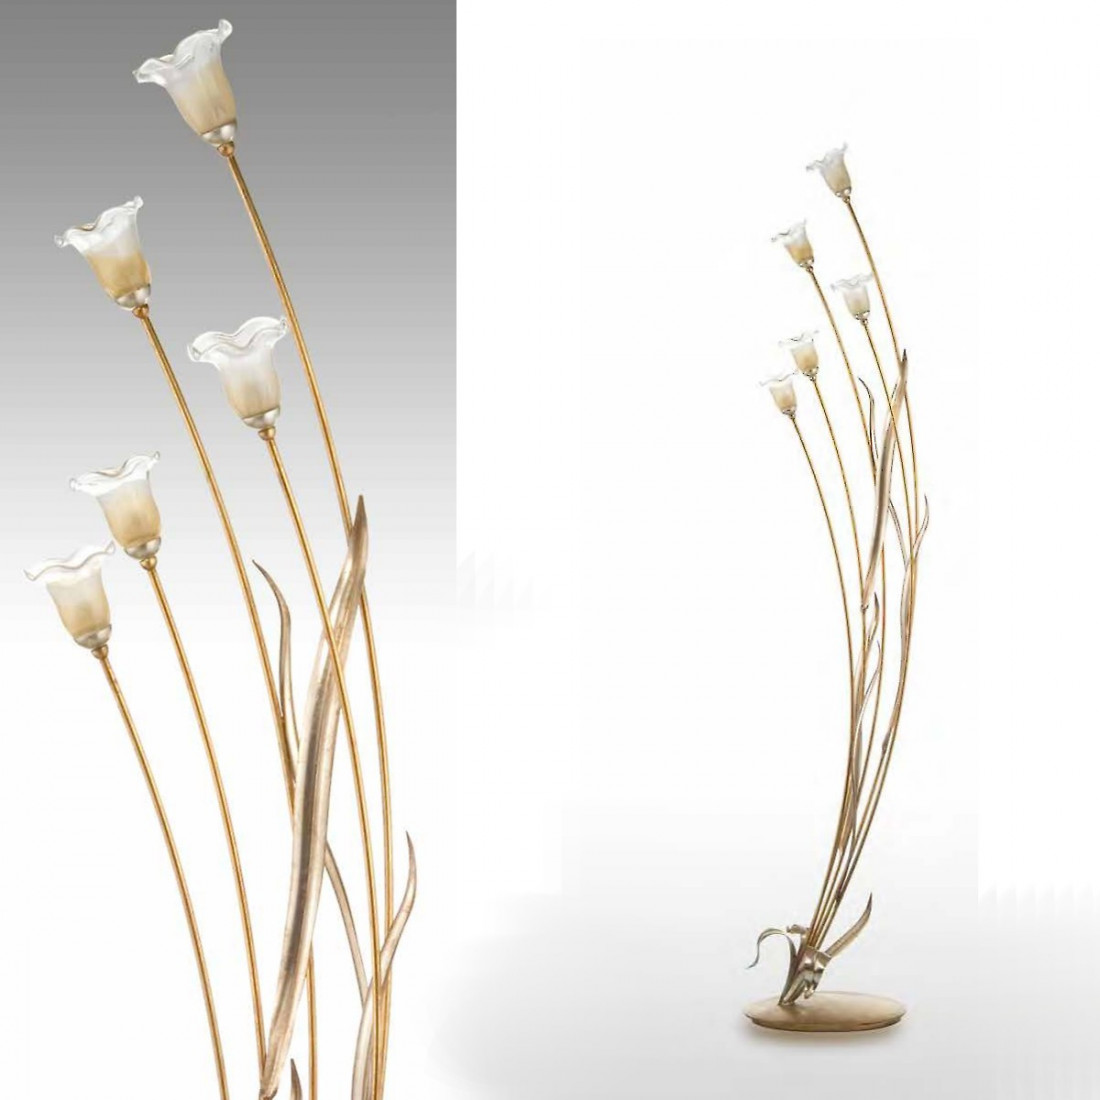 Lampadaire LP-SAN FREDIANO IRIS G9 48W lampadaire en verre floral classique